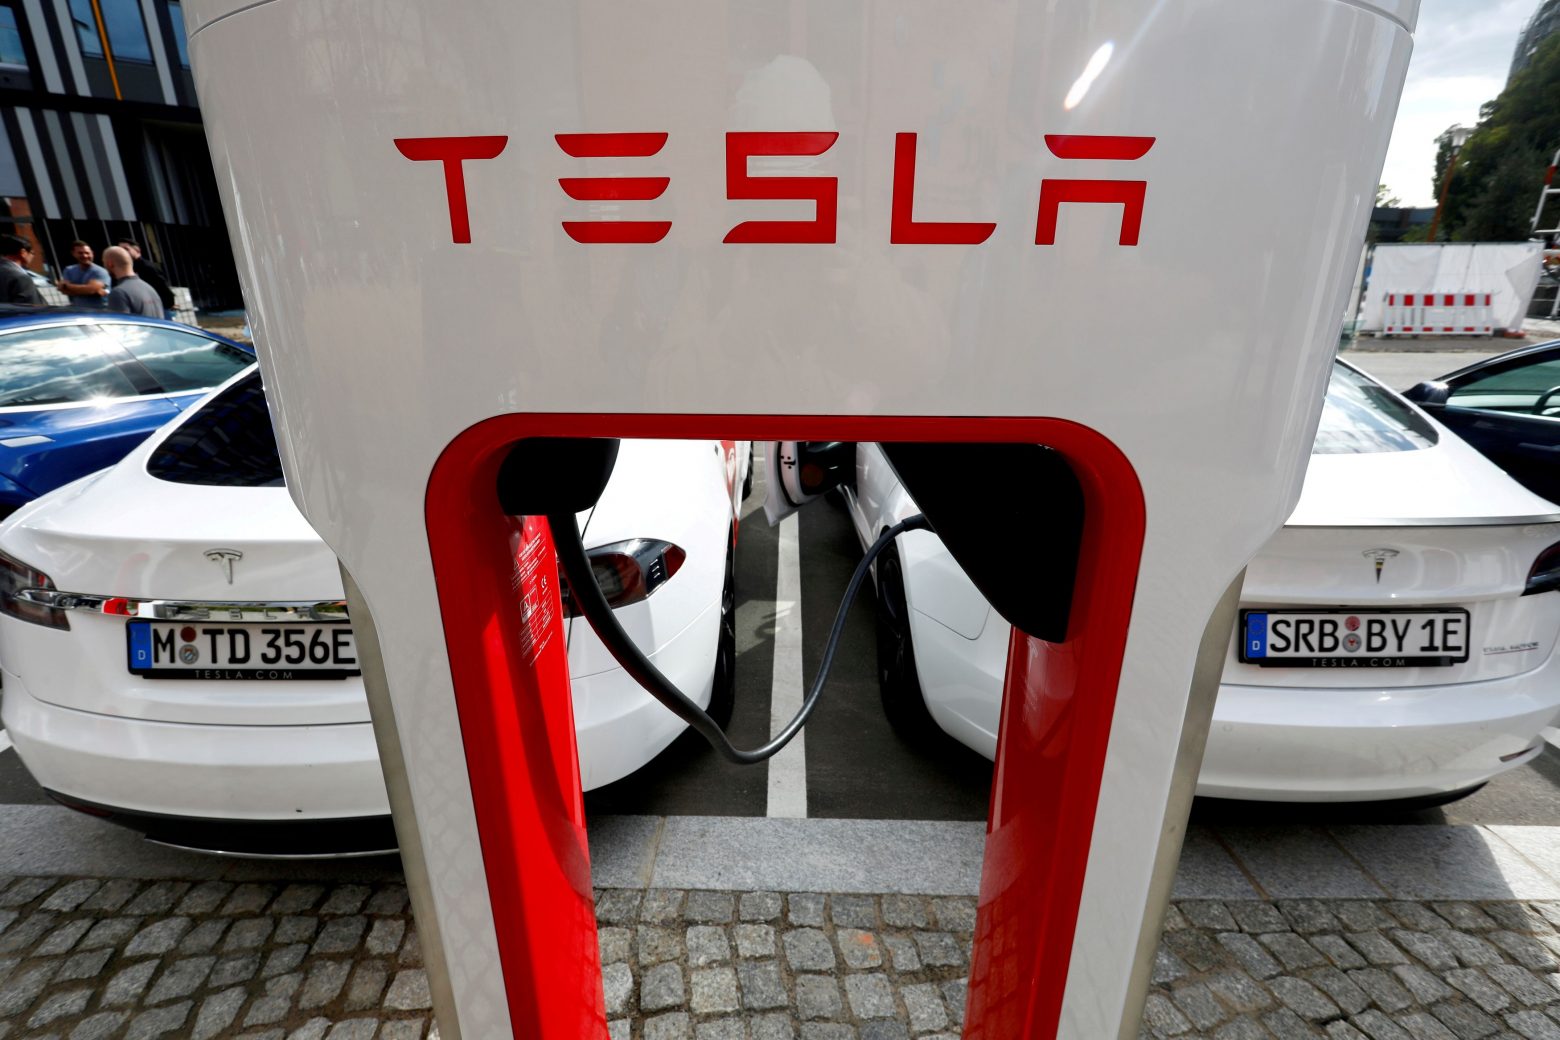 Ιλον Μασκ: «Ανοίγει» τους supercharger της Tesla και σε άλλα ηλεκτρικά οχήματα